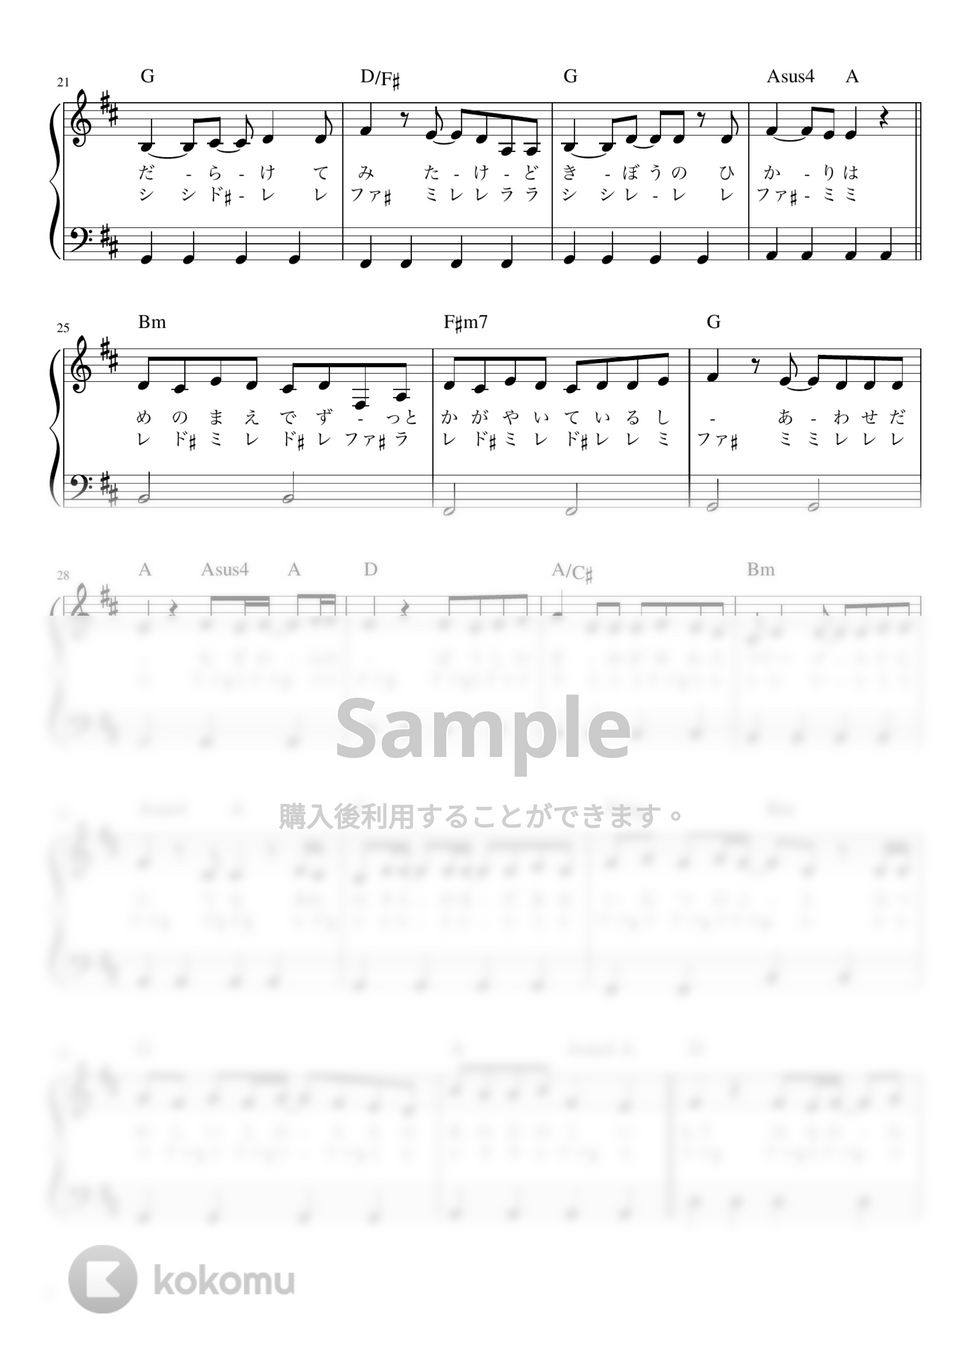 あいみょん - マリーゴールド (かんたん 歌詞付き ドレミ付き 初心者) by piano.tokyo